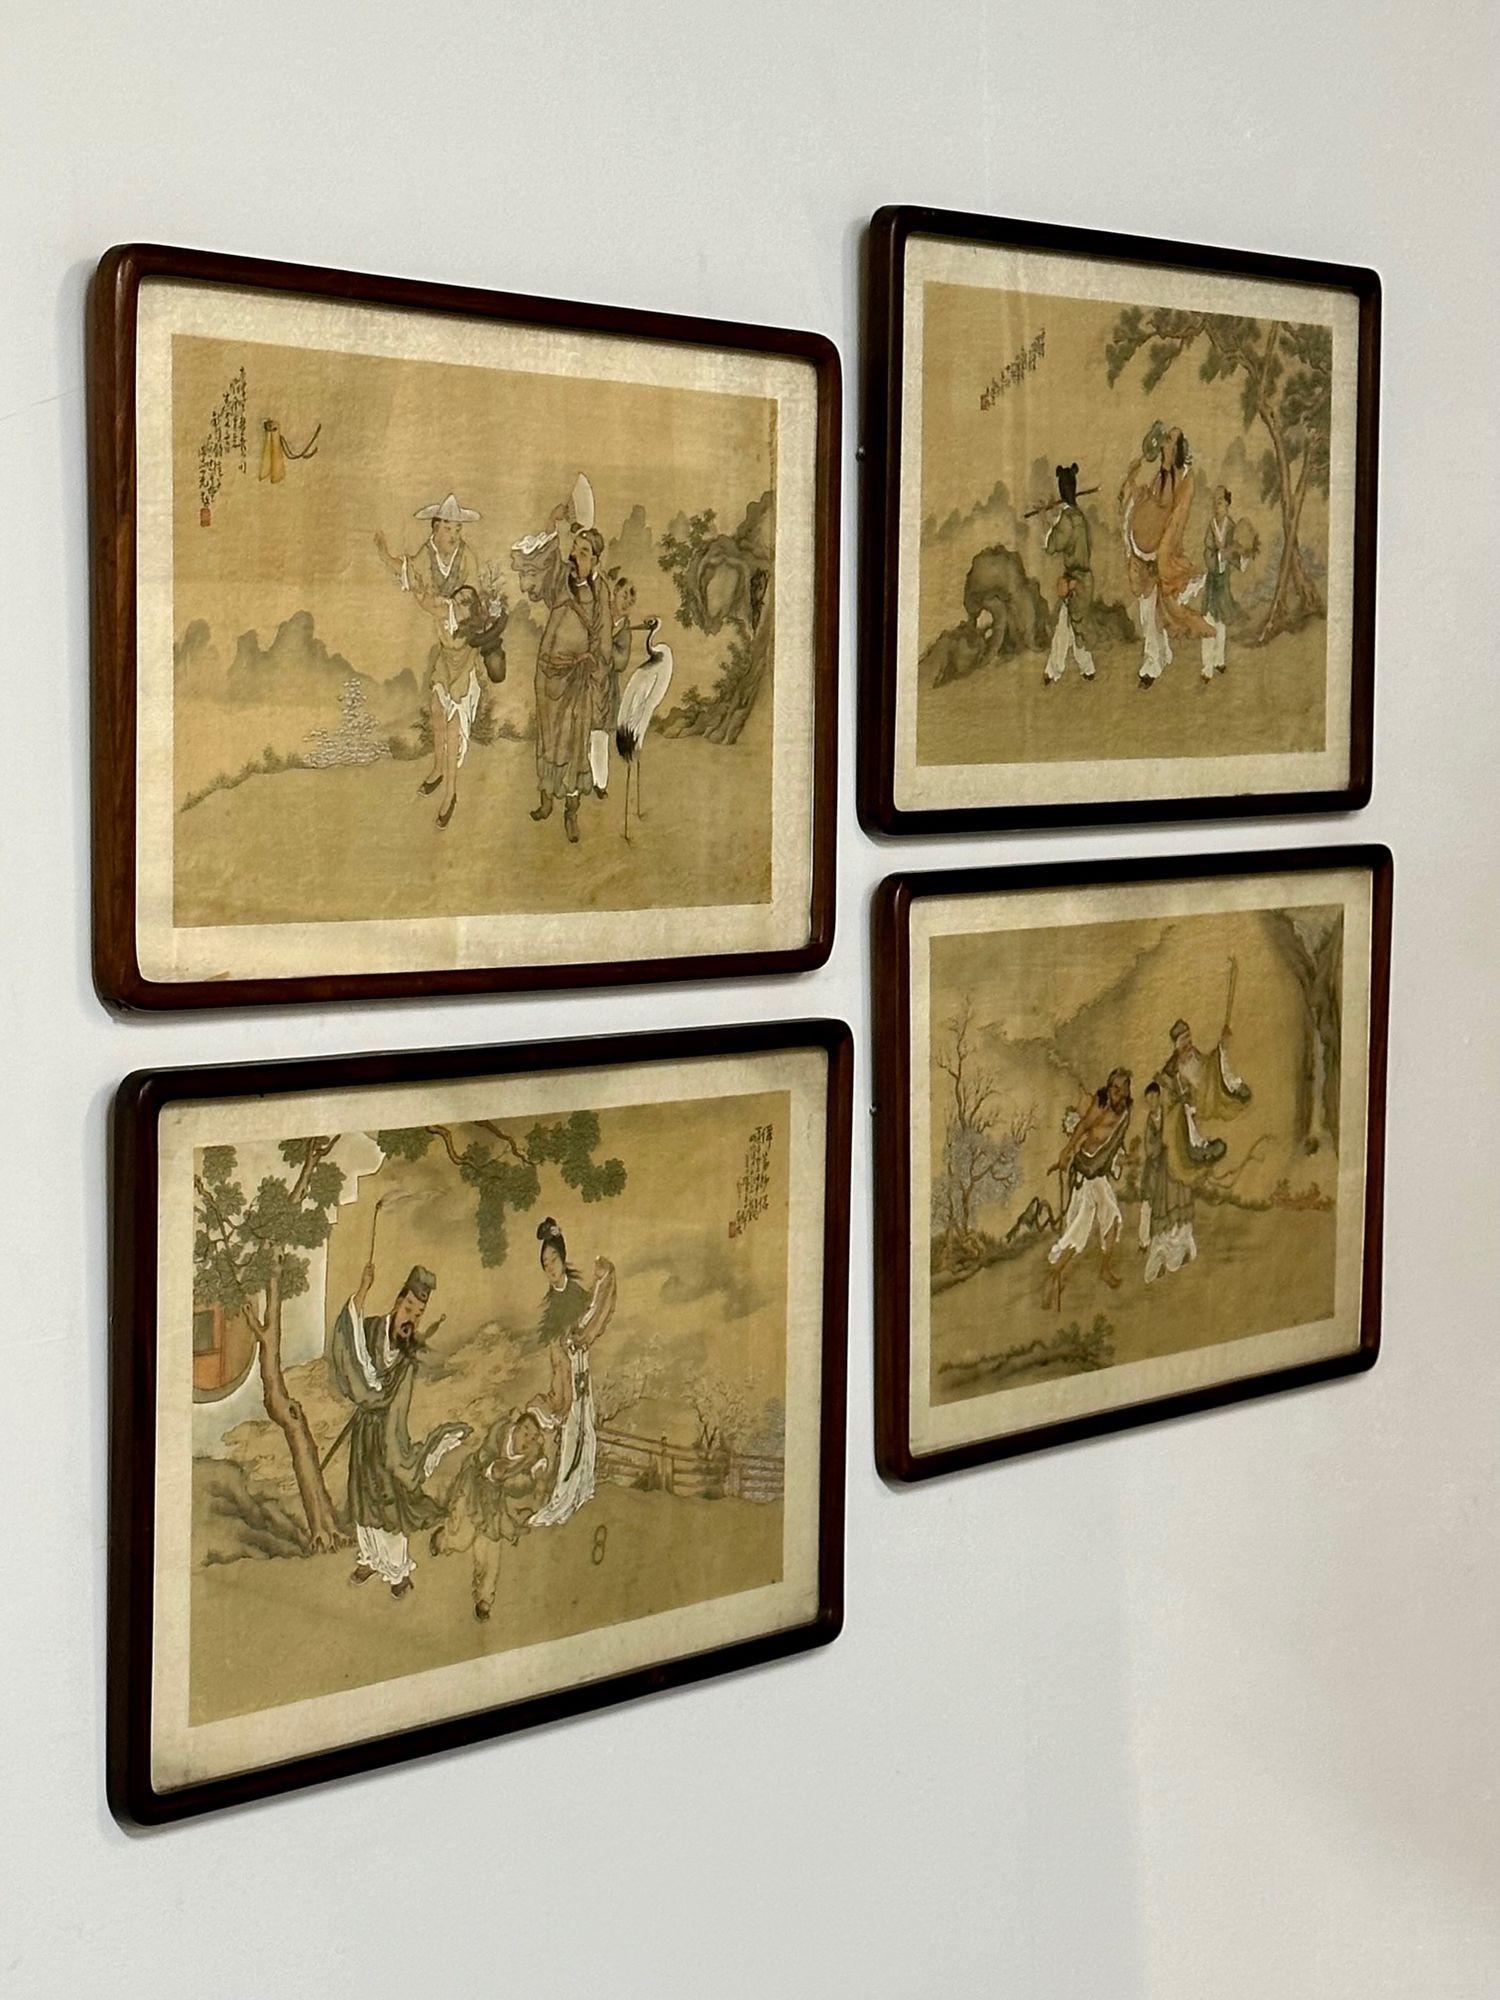 Ensemble de quatre peintures chinoises dans des cadres en bois de rose, signées, 19e siècle, toile à l'huile

Superbe exemple d'œuvres orientales sur toile et sur bois. Chacune d'entre elles est présentée dans un cadre en bois de rose, avec